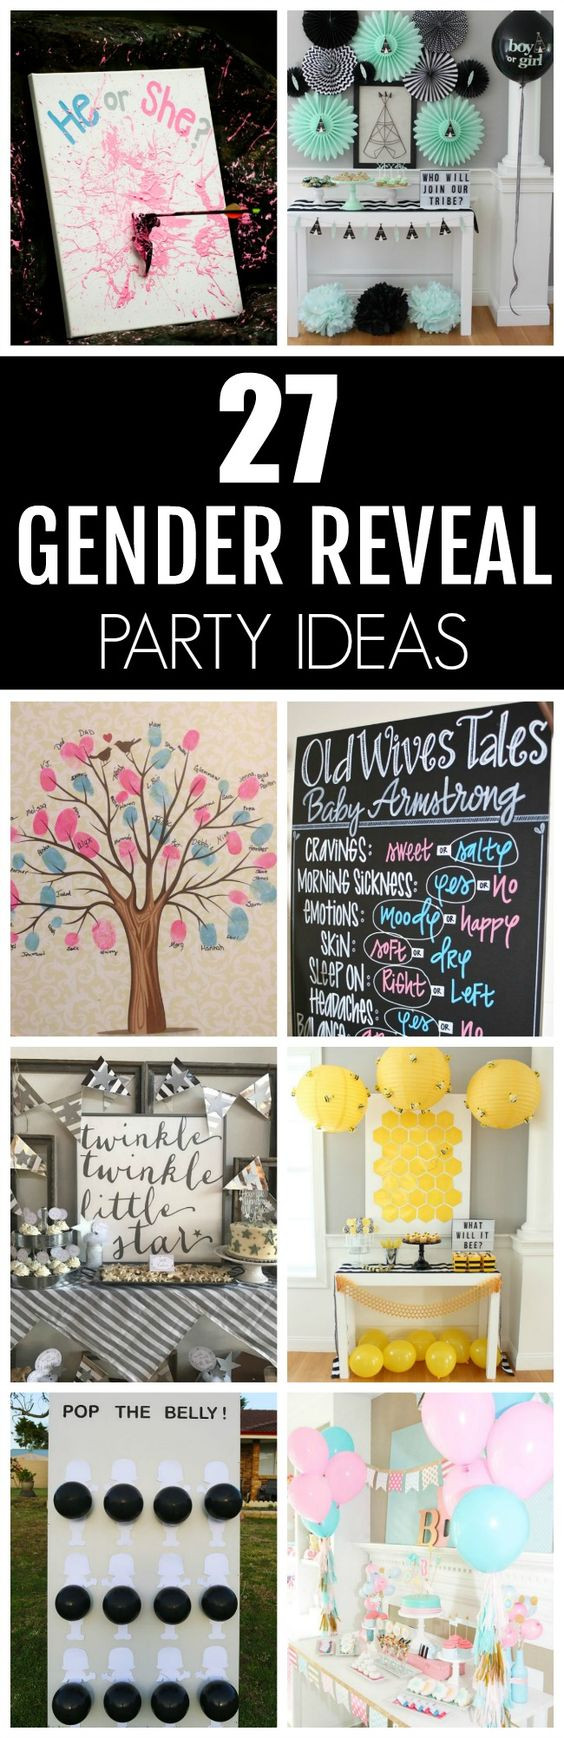 Unique Gender Reveal Party Ideas
 27 Creative Gender Reveal Party Ideas Pretty My Party